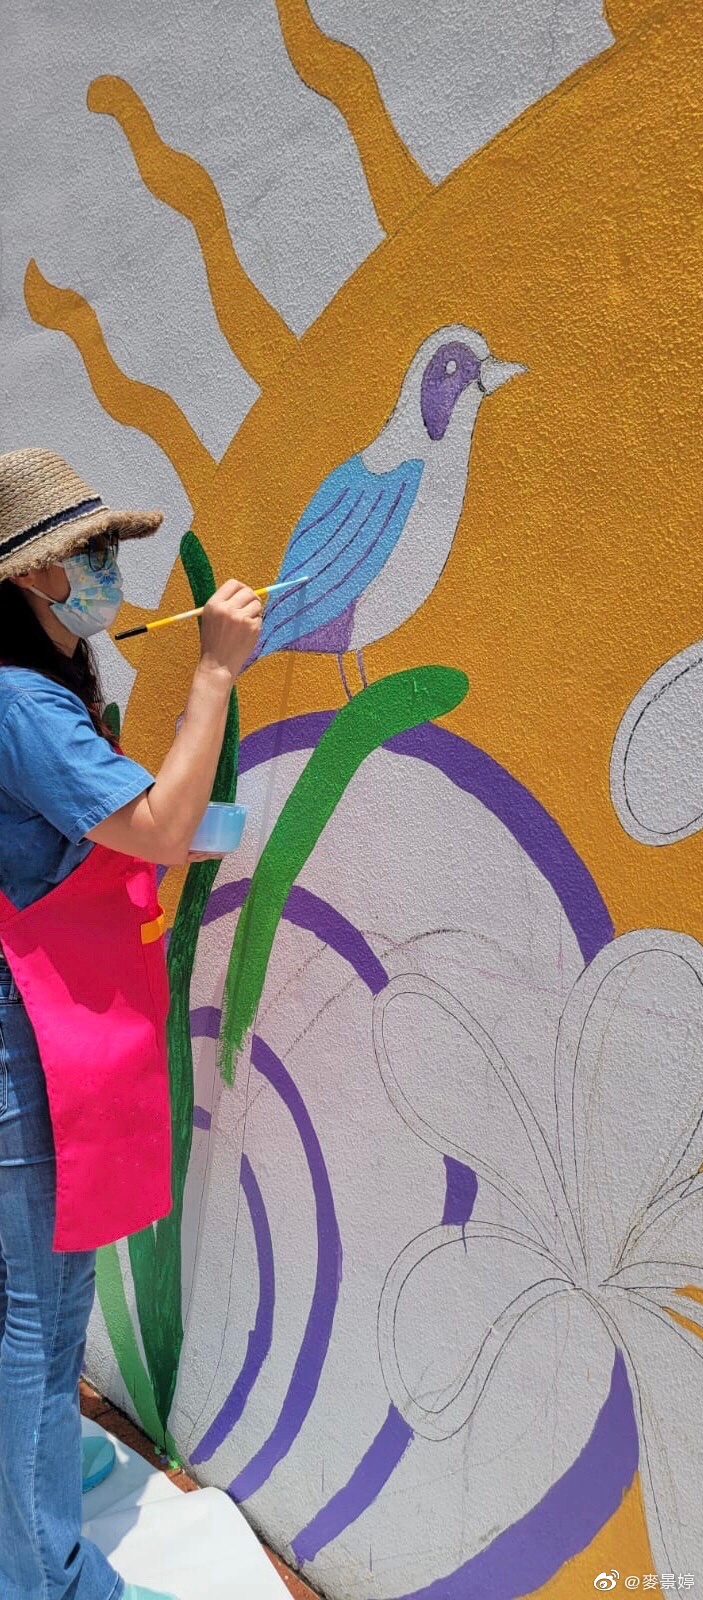 麦景婷近年经常参与街头绘画壁画。